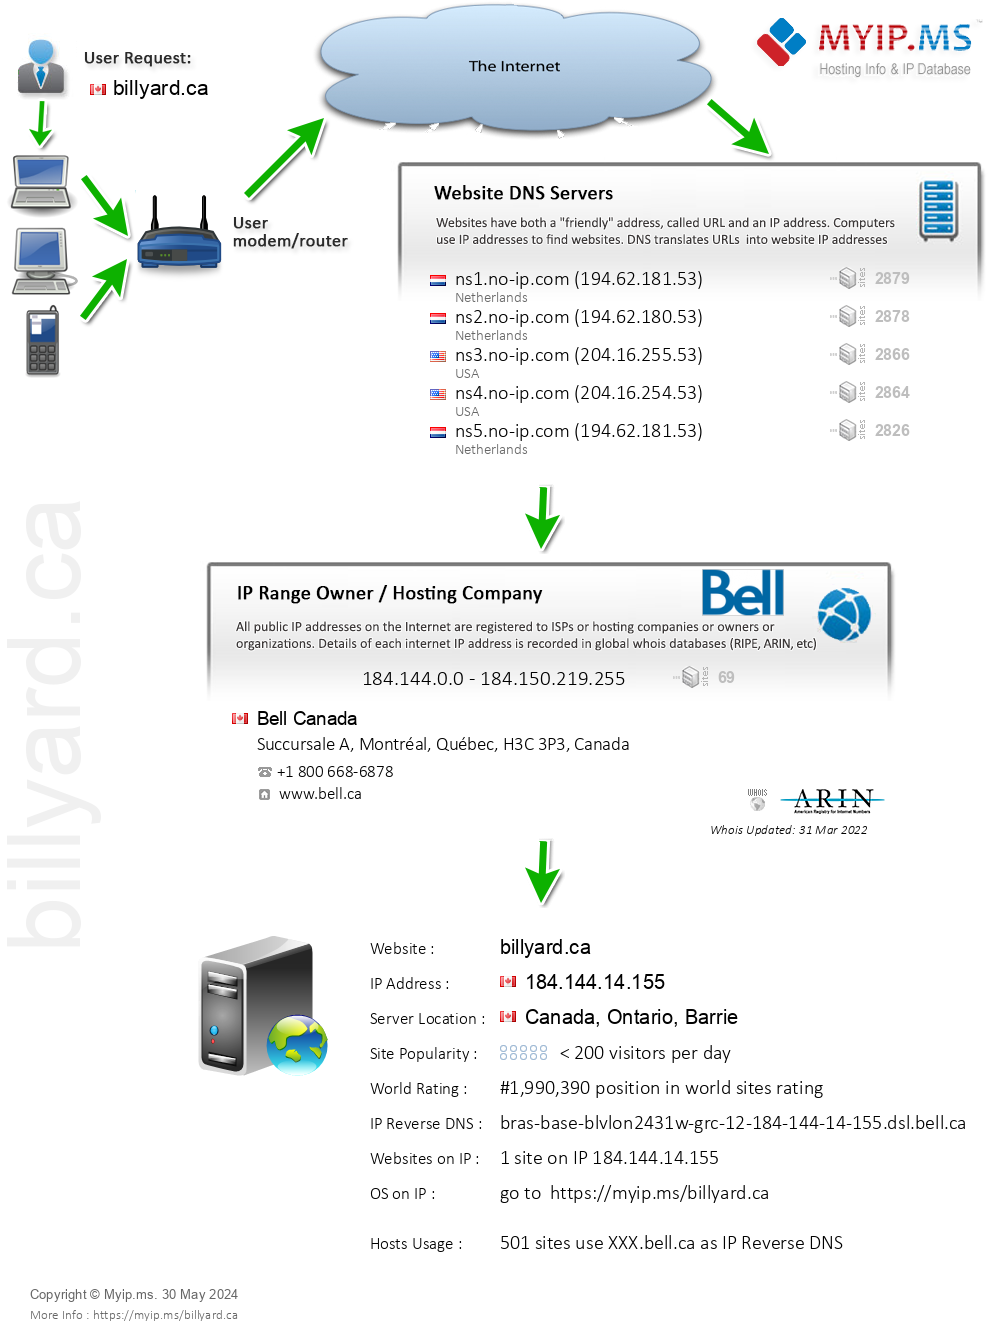 Billyard.ca - Website Hosting Visual IP Diagram